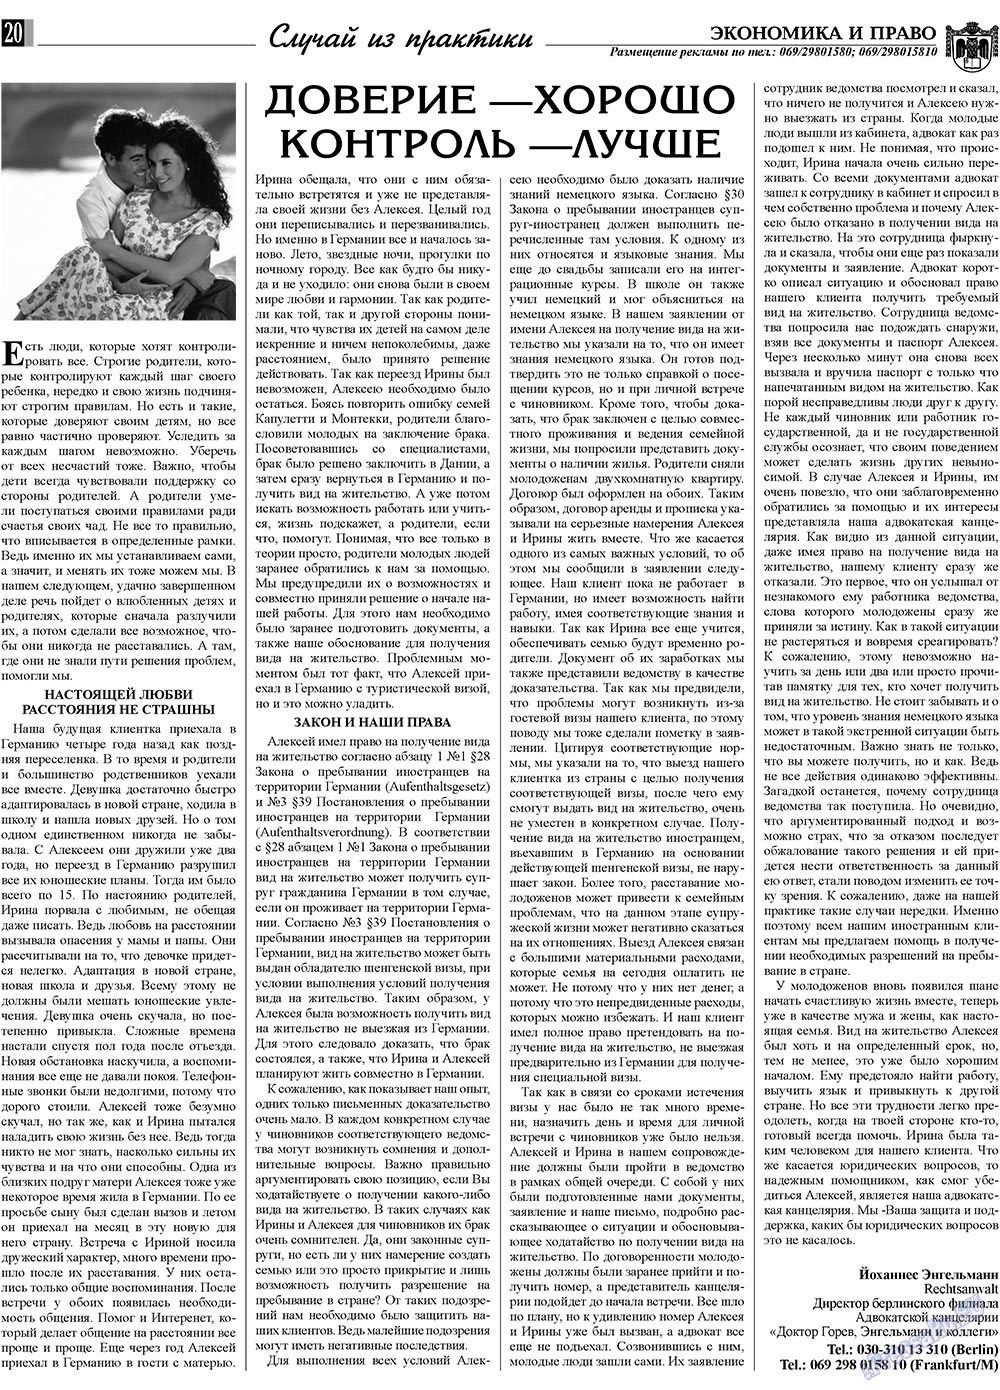 Экономика и право, газета. 2009 №9 стр.20